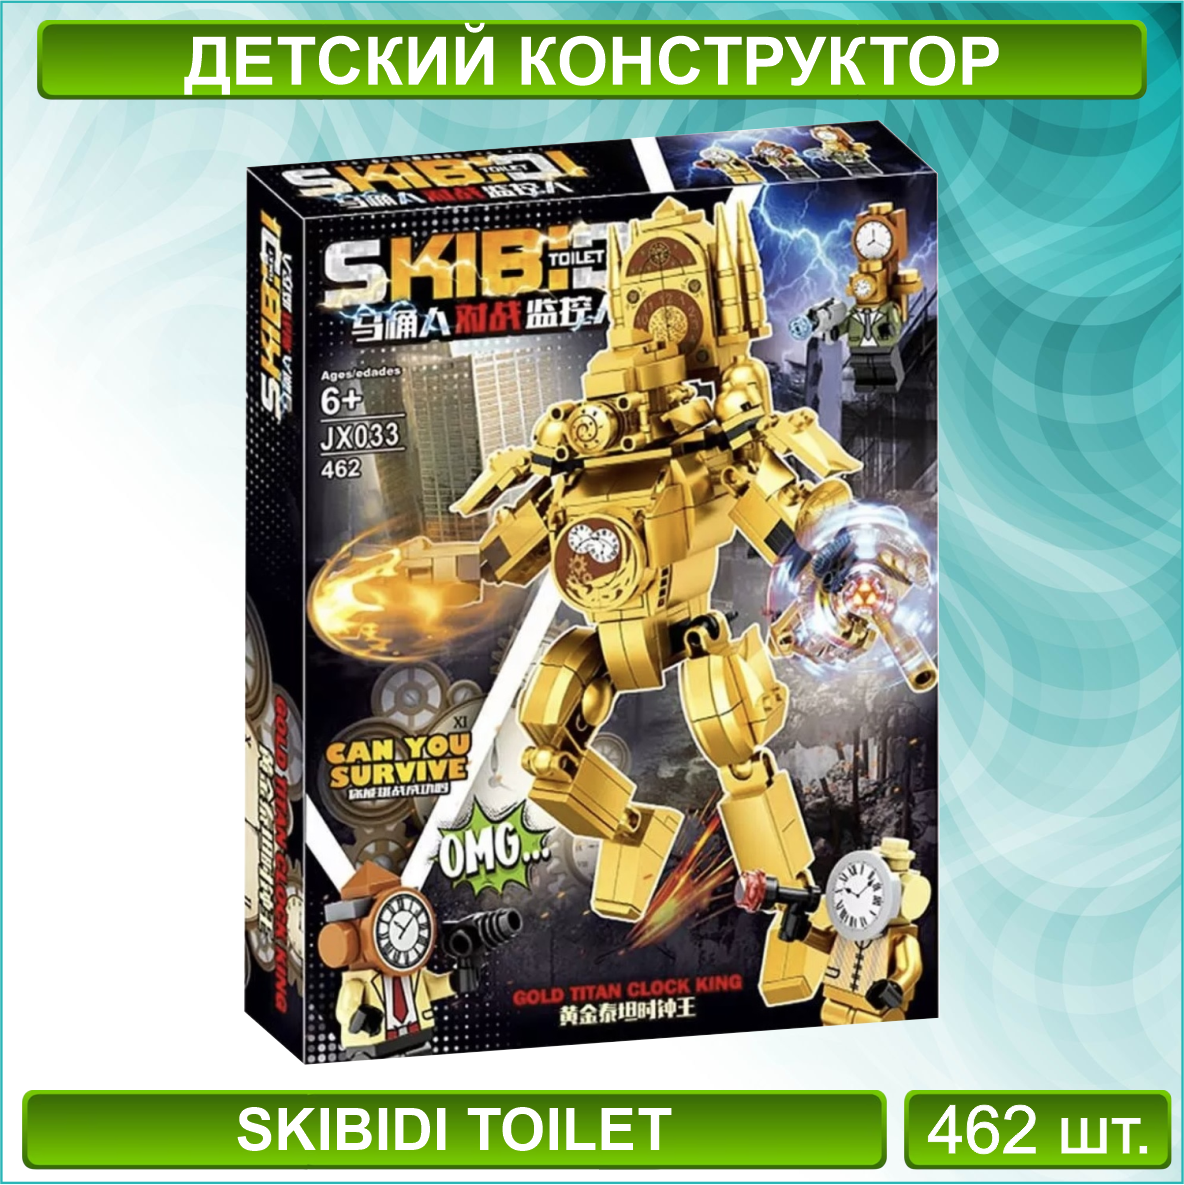 Детский конструктор "Часовой король. Титан" Скибиди Туалет - Skibidi toilet (462 детали)